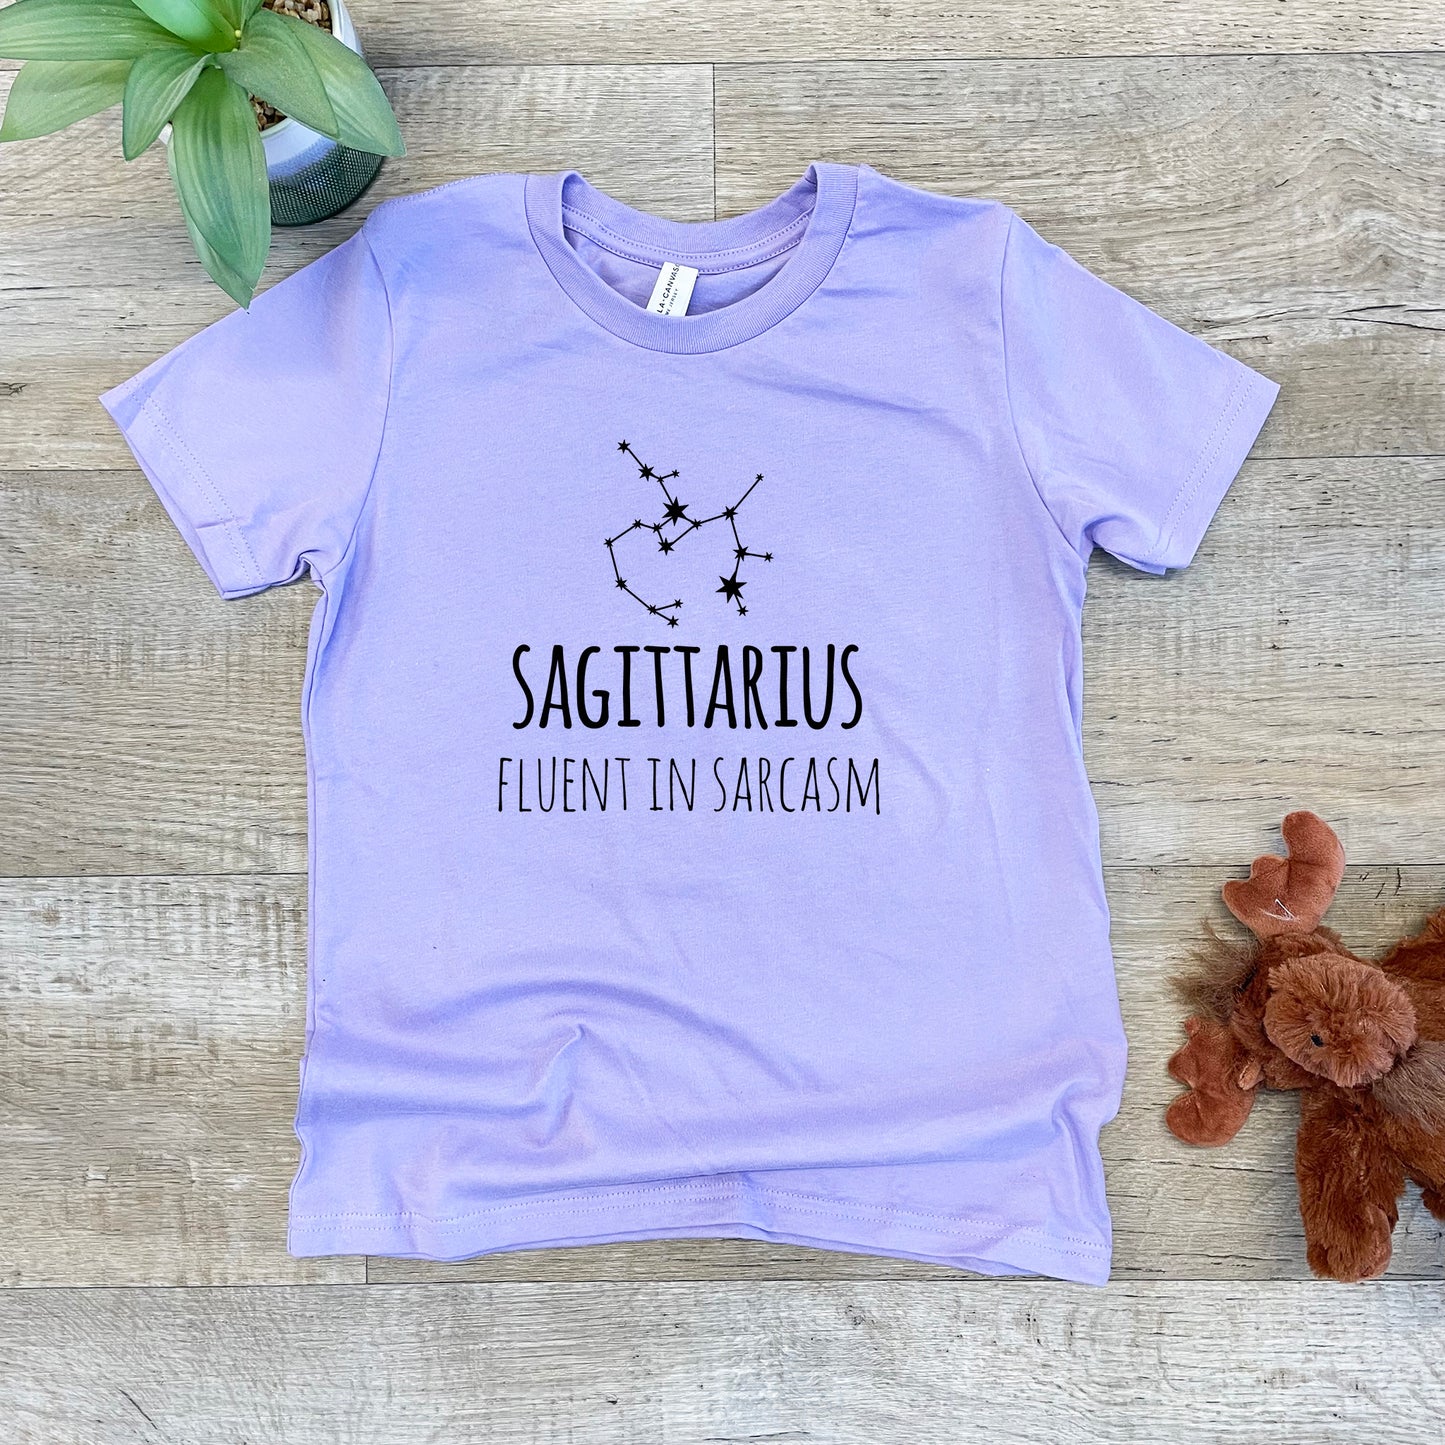 Sagittarius - Kid's Tee - Columbia Blue or Lavender